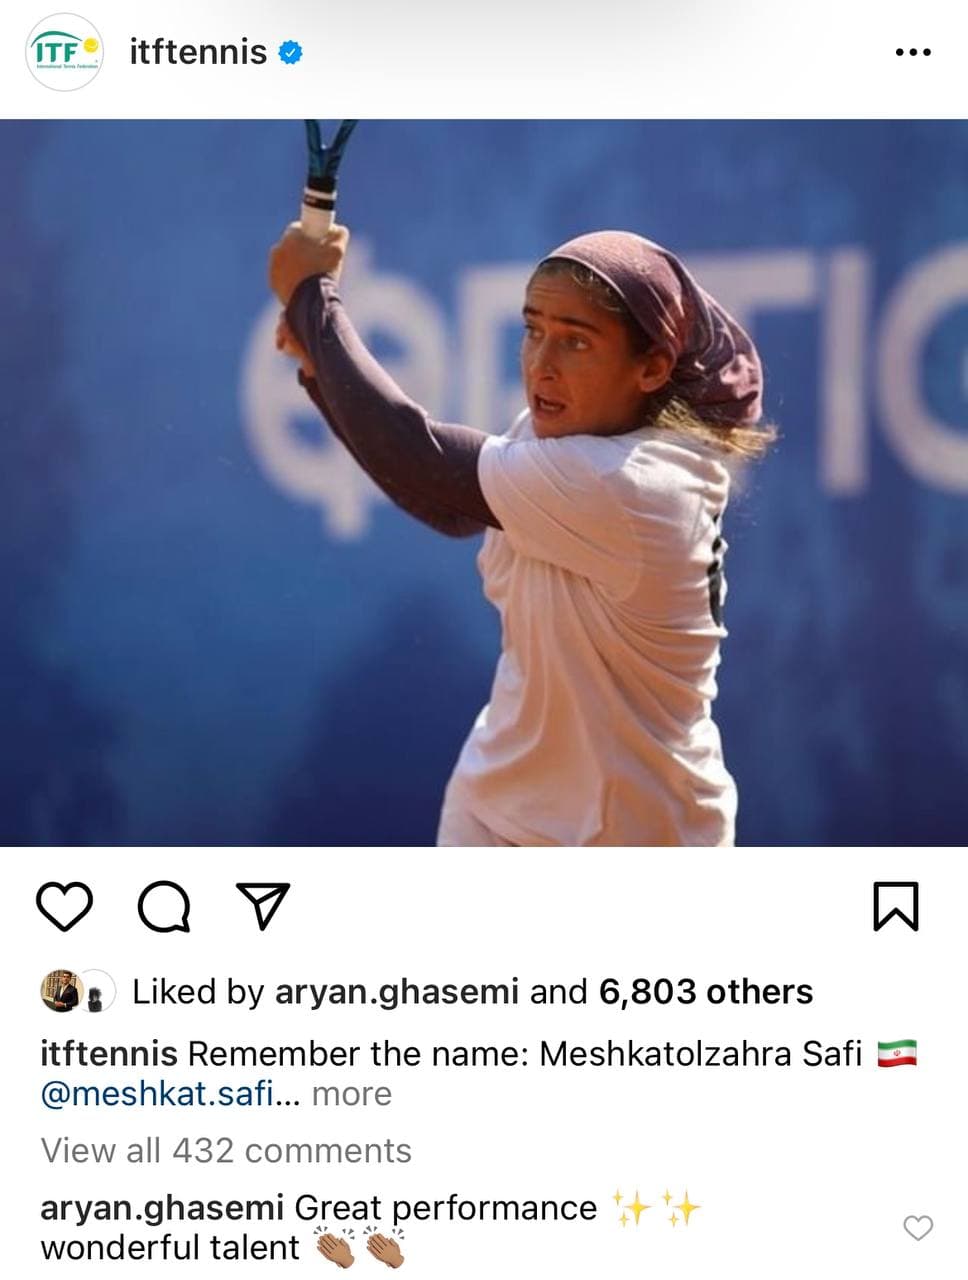 واکنش جالب فدراسیون جهانی به عملکرد تنیس باز ایرانی/عکس